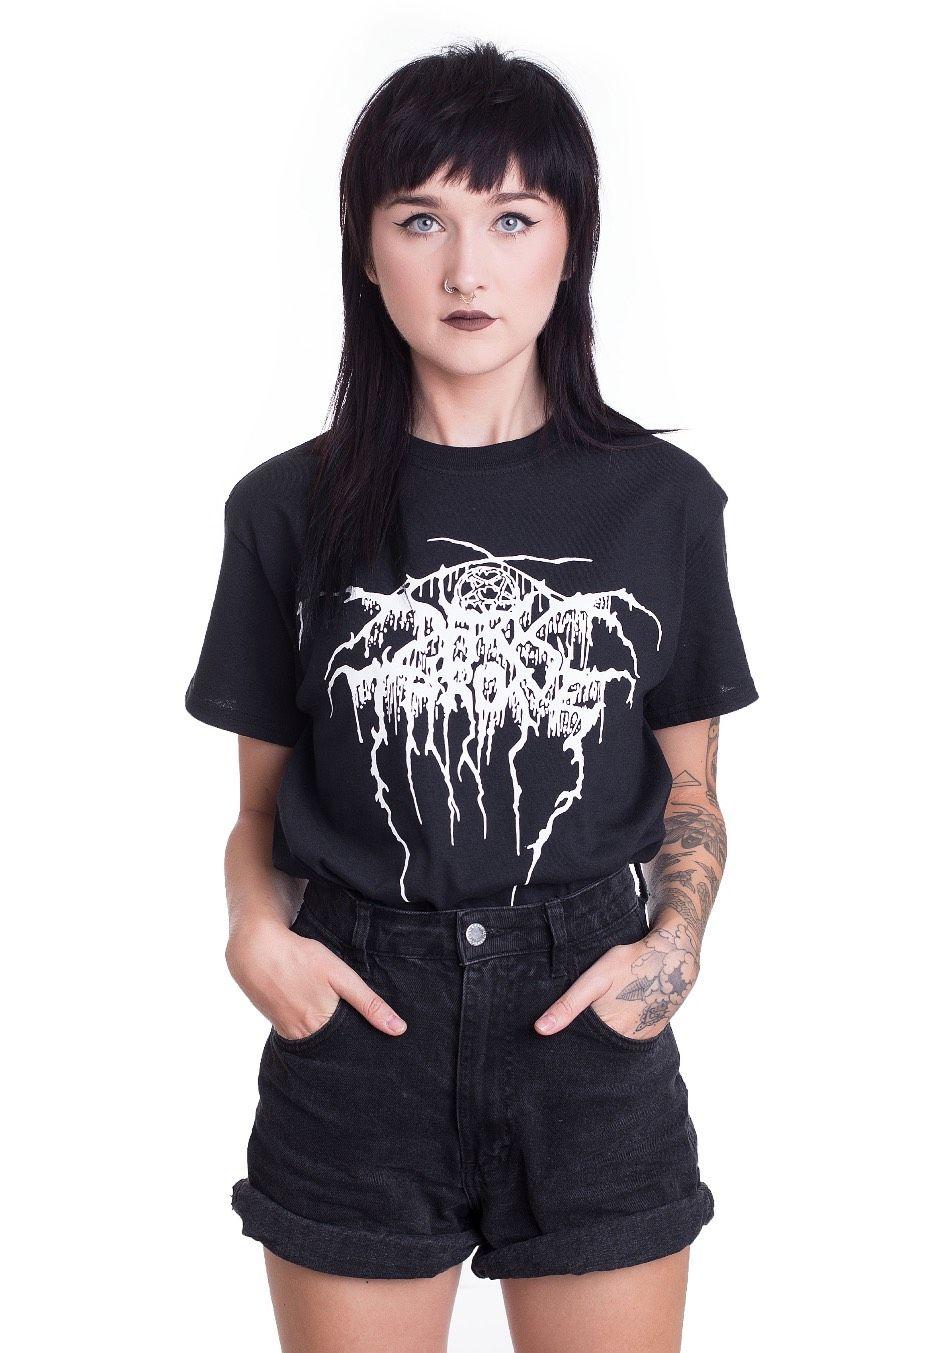 Darkthrone Logo - Darkthrone - Logo - T-Shirt - Official Black Metal Merchandise Shop ...